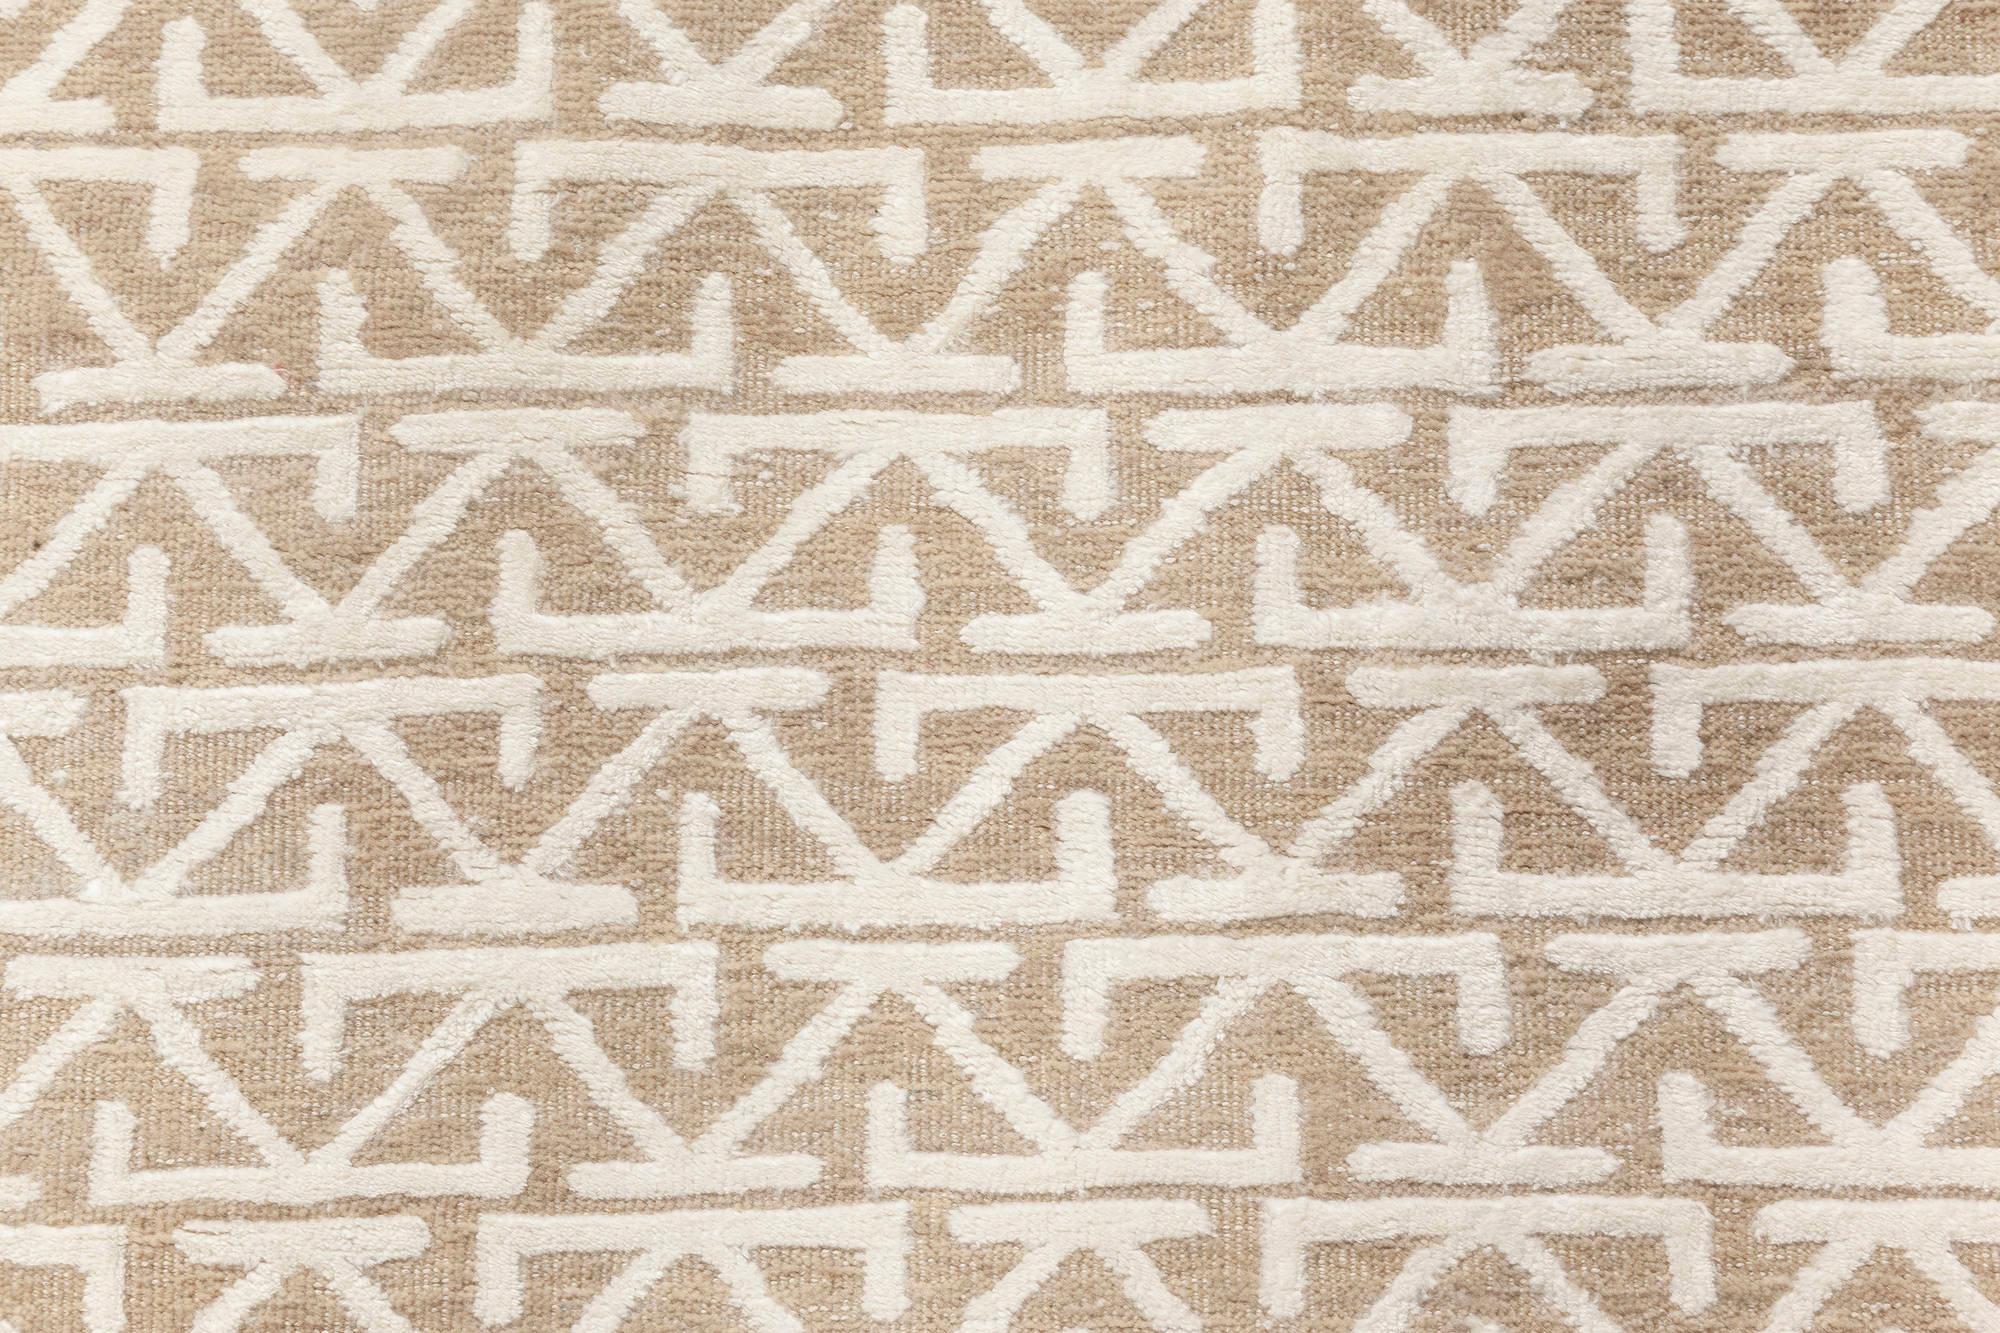 Zeitgenössischer orientalisch inspirierter Teppich in Beige und Weiß von Doris Leslie Blau.
Größe: 10'9